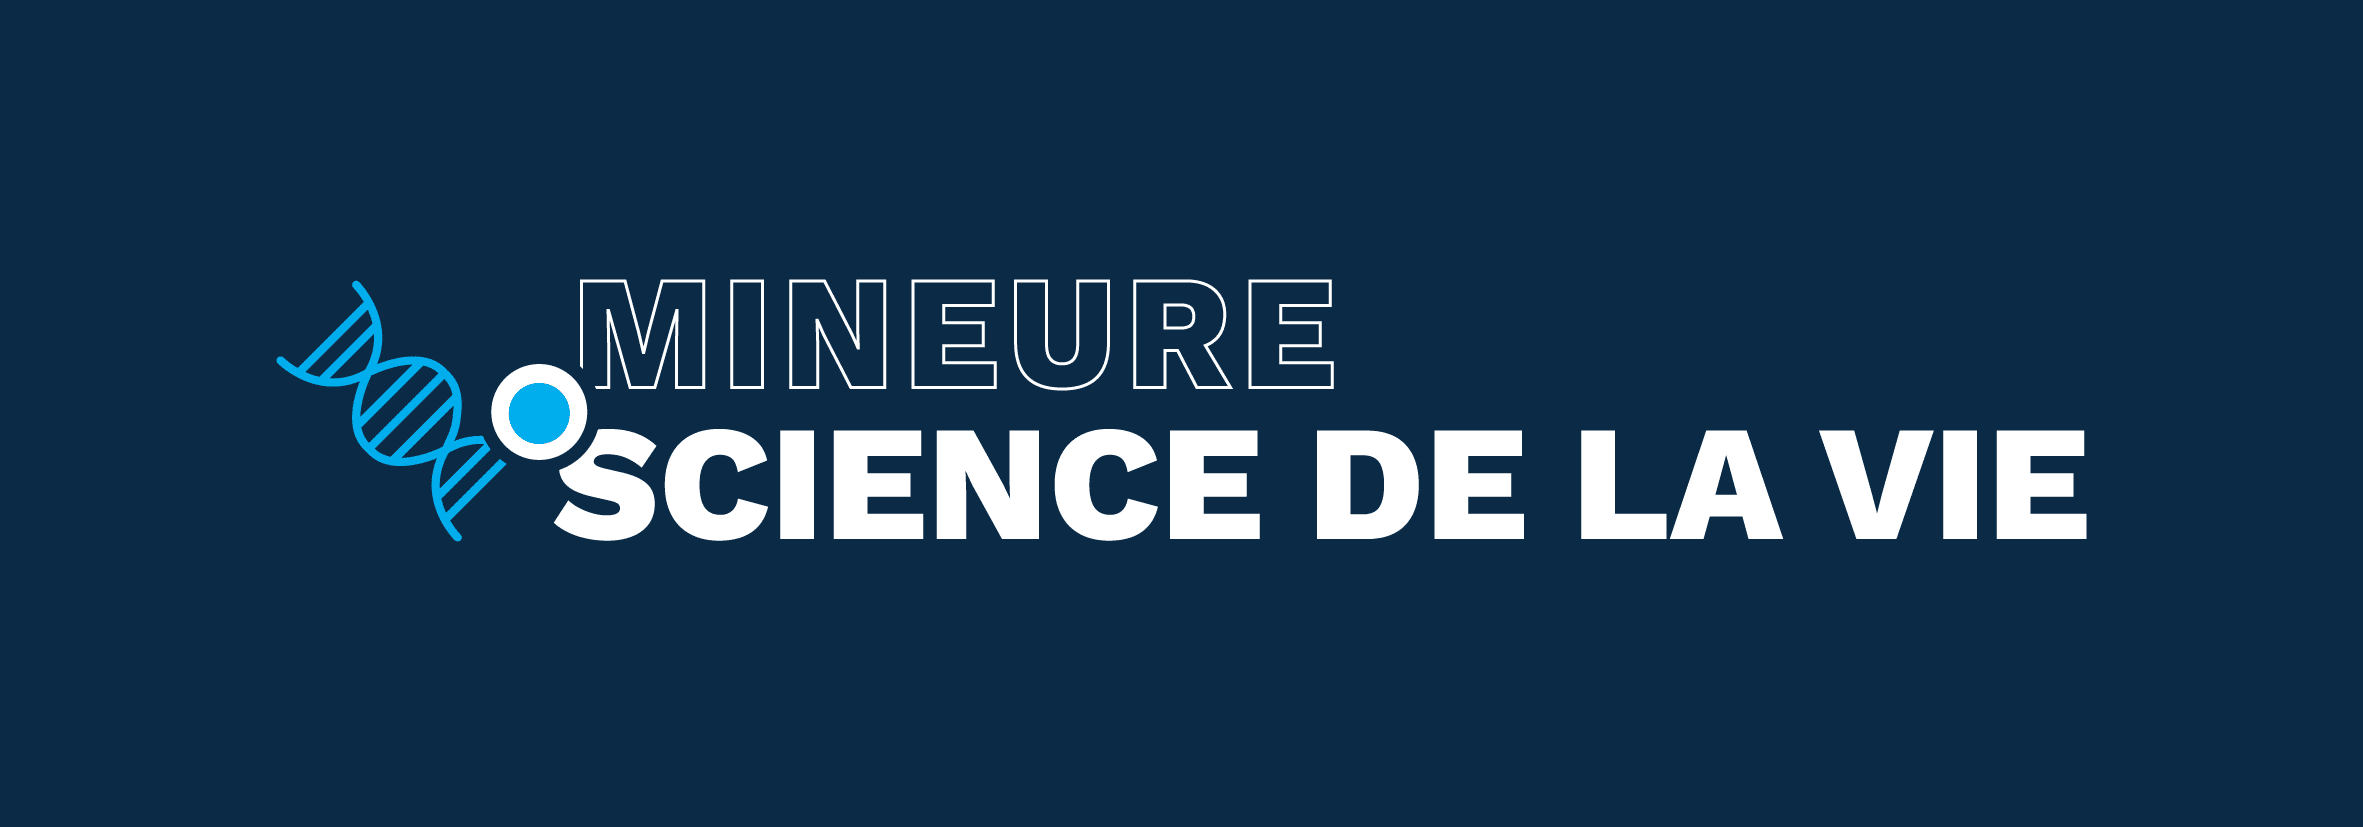 Mineure Science de la vie PASS Besançon : tout savoir !